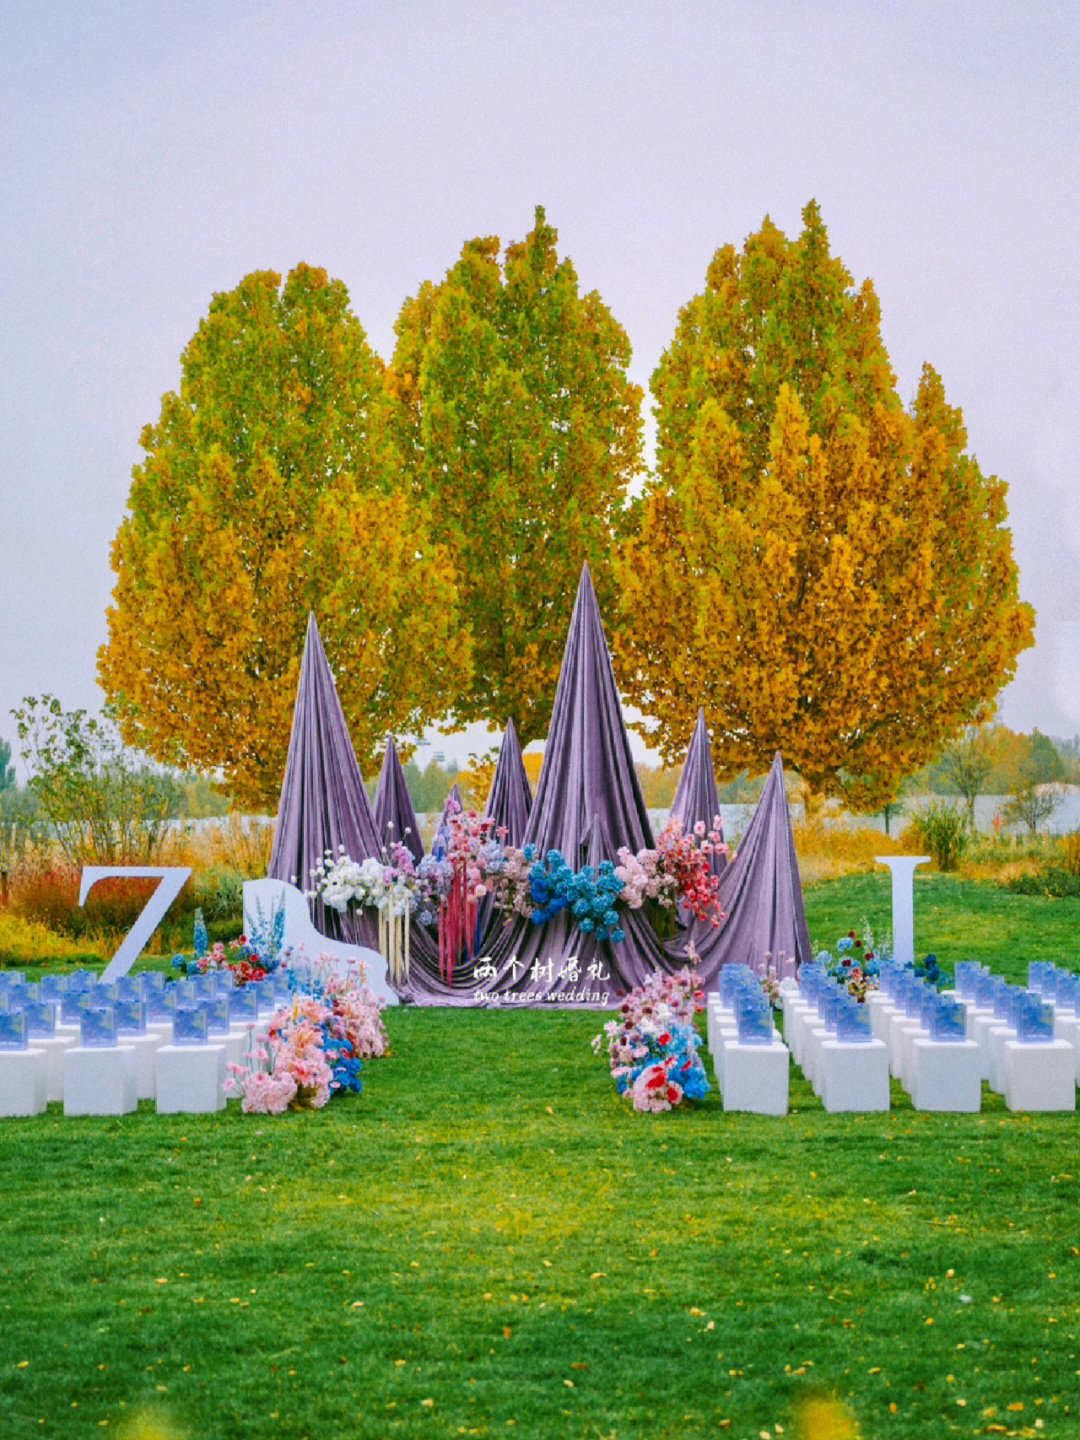 北京的秋天是绚烂夺目的北京圣露庄园婚礼